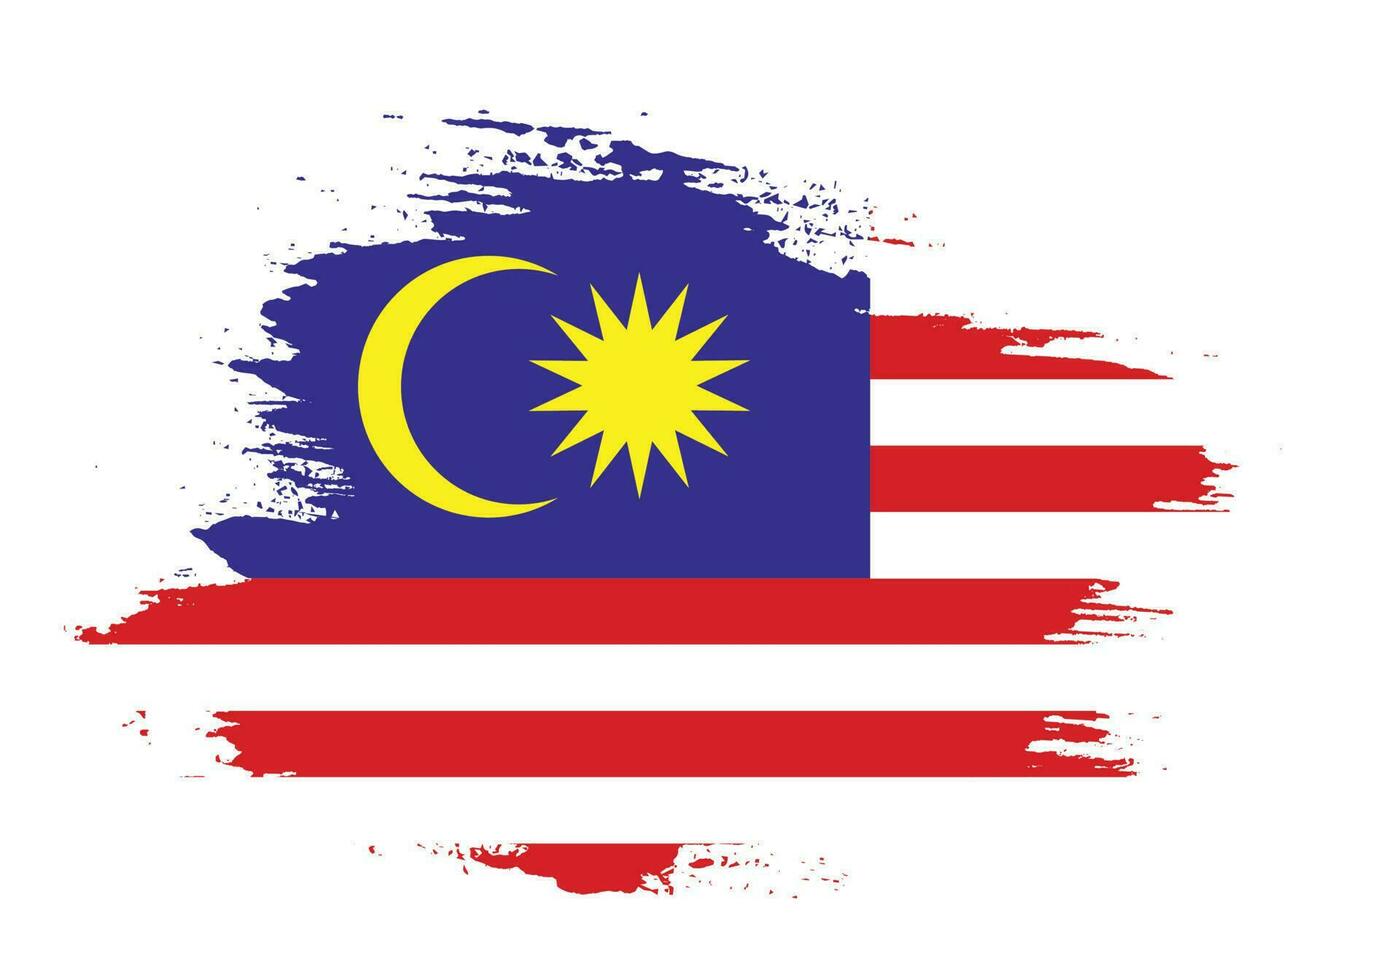 platt grunge textur abstrakt malaysia flagga vektor